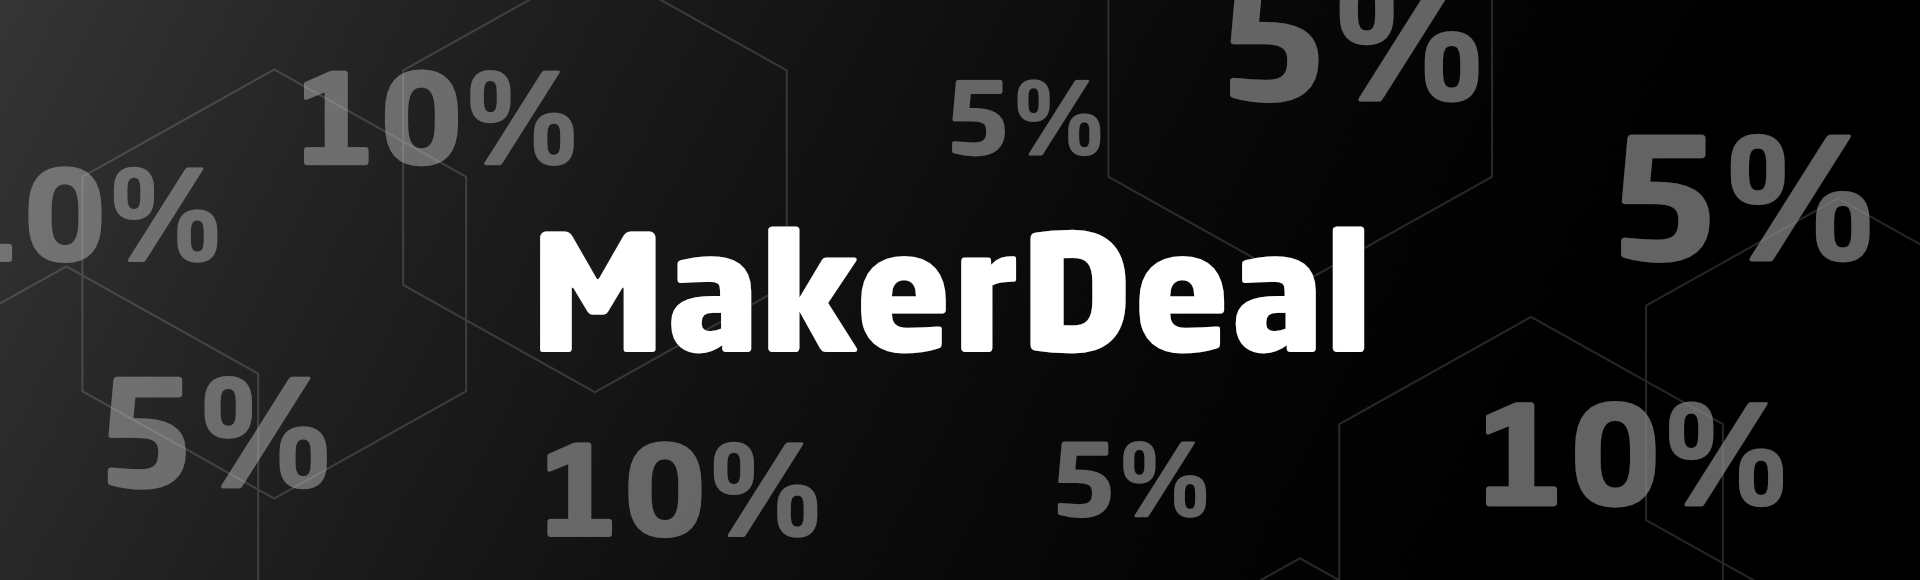 MakerDeal